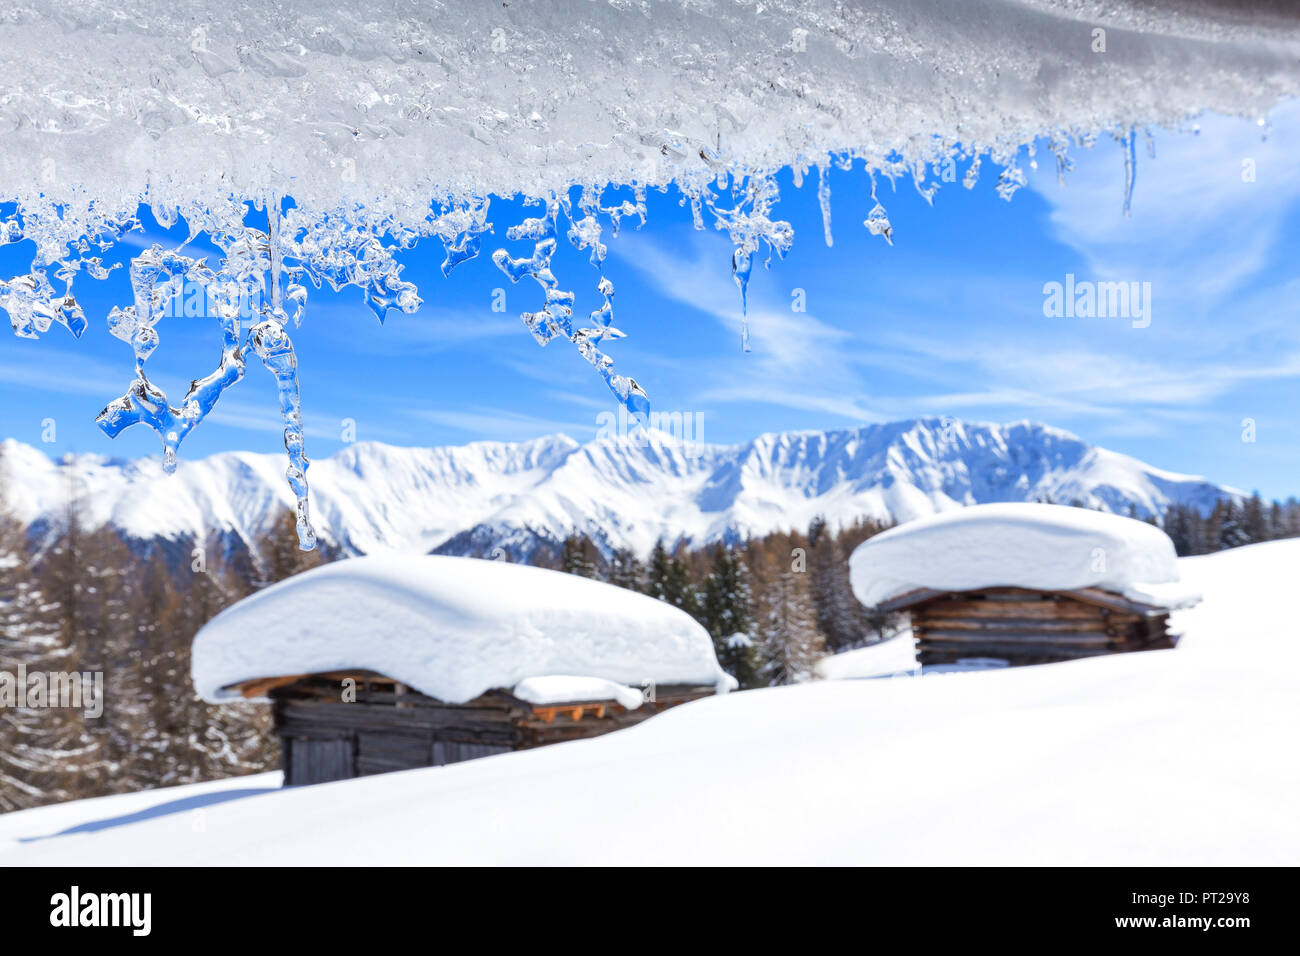 Transparent ice runs from a roof, Wiesner Alp, Davos Wiesen, Landwasser Valley, Albula Valley, District of Prattigau / Davos, Canton of Graubünden, Switzerland, Europe, Stock Photo